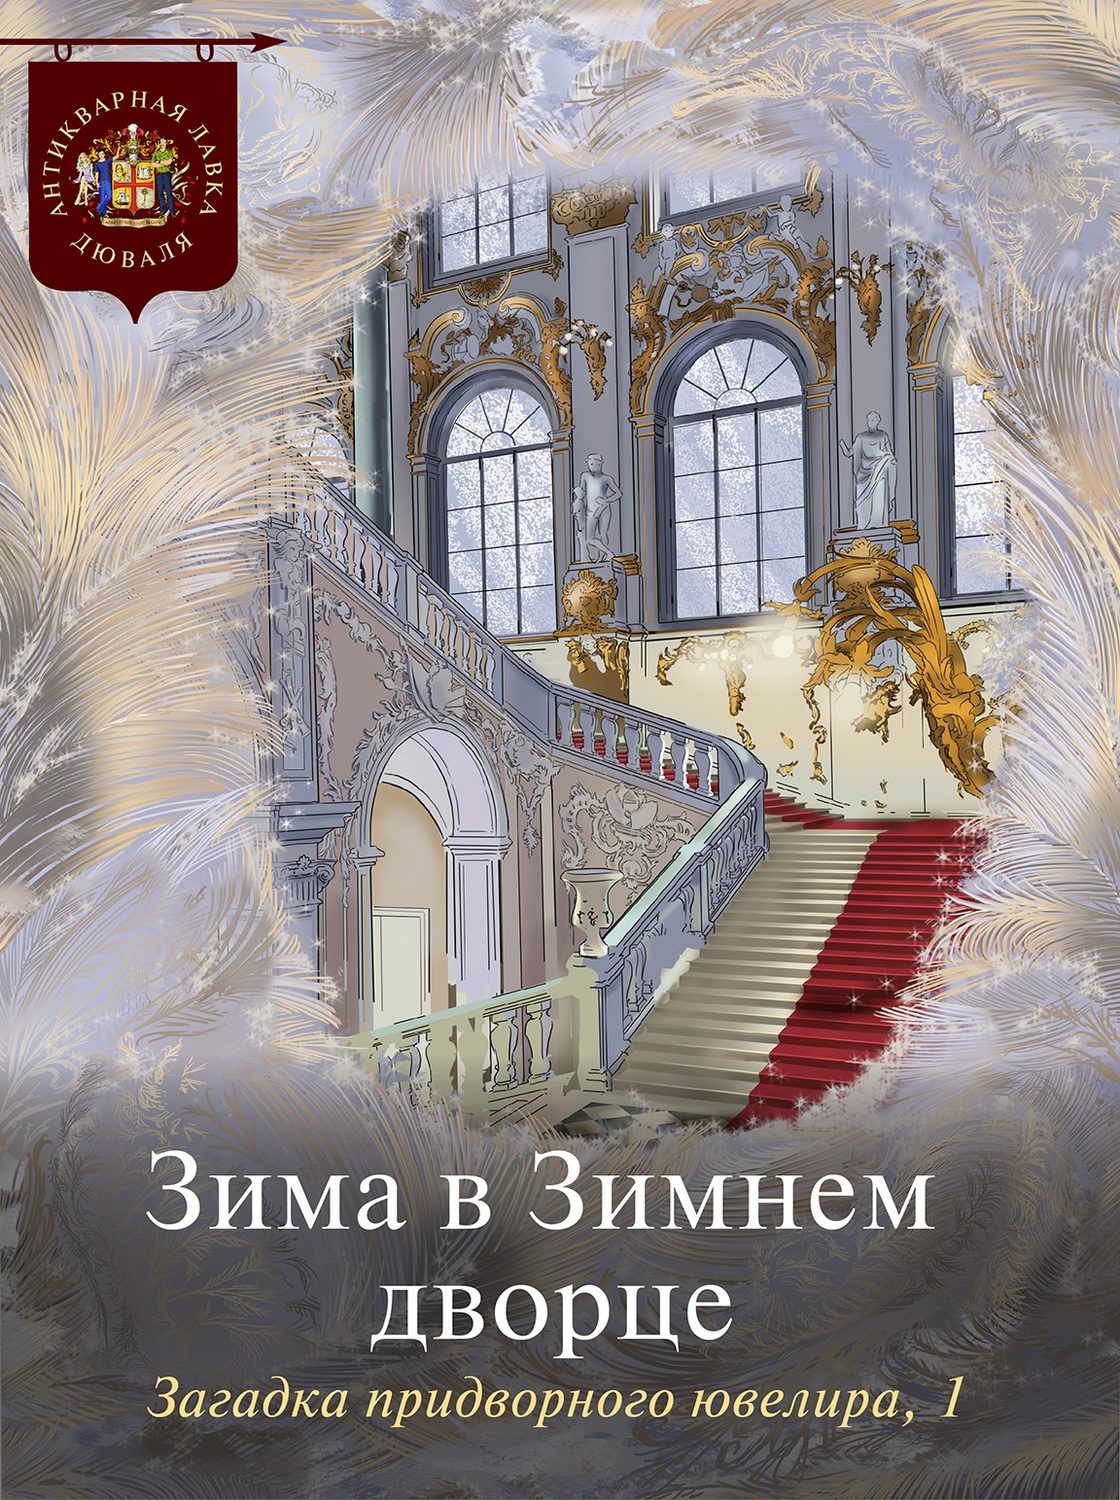 Книги о зимнем Дворце